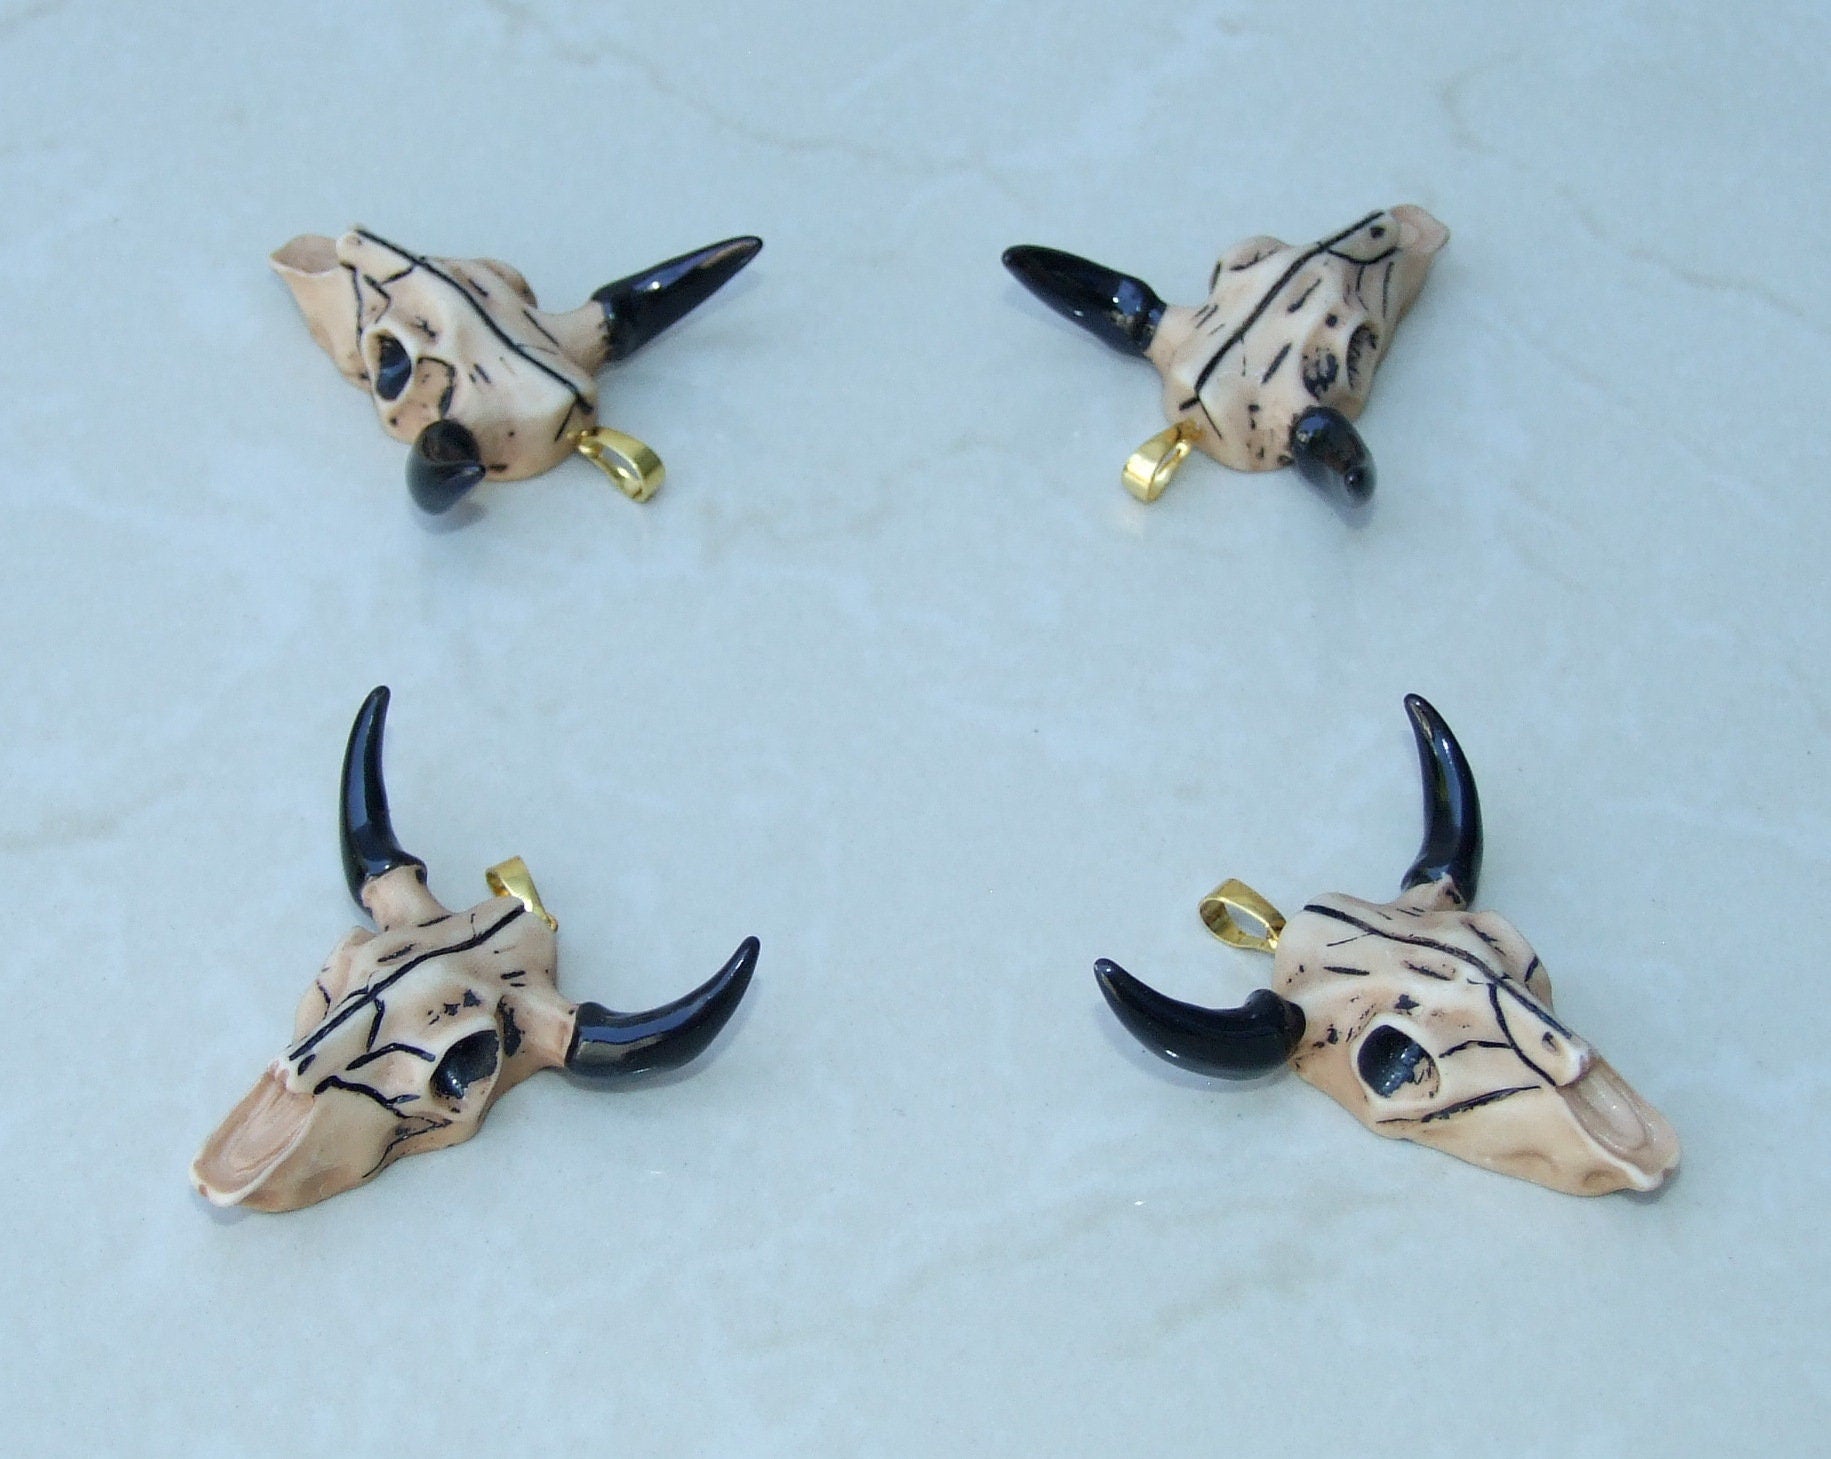 Longhorn Cattle Skull Pendant, Skull Pendant, Buffalo Skull Pendant, Cow Horn, Charm, Football, Sports, Gold Plated - 45mm x 45mm